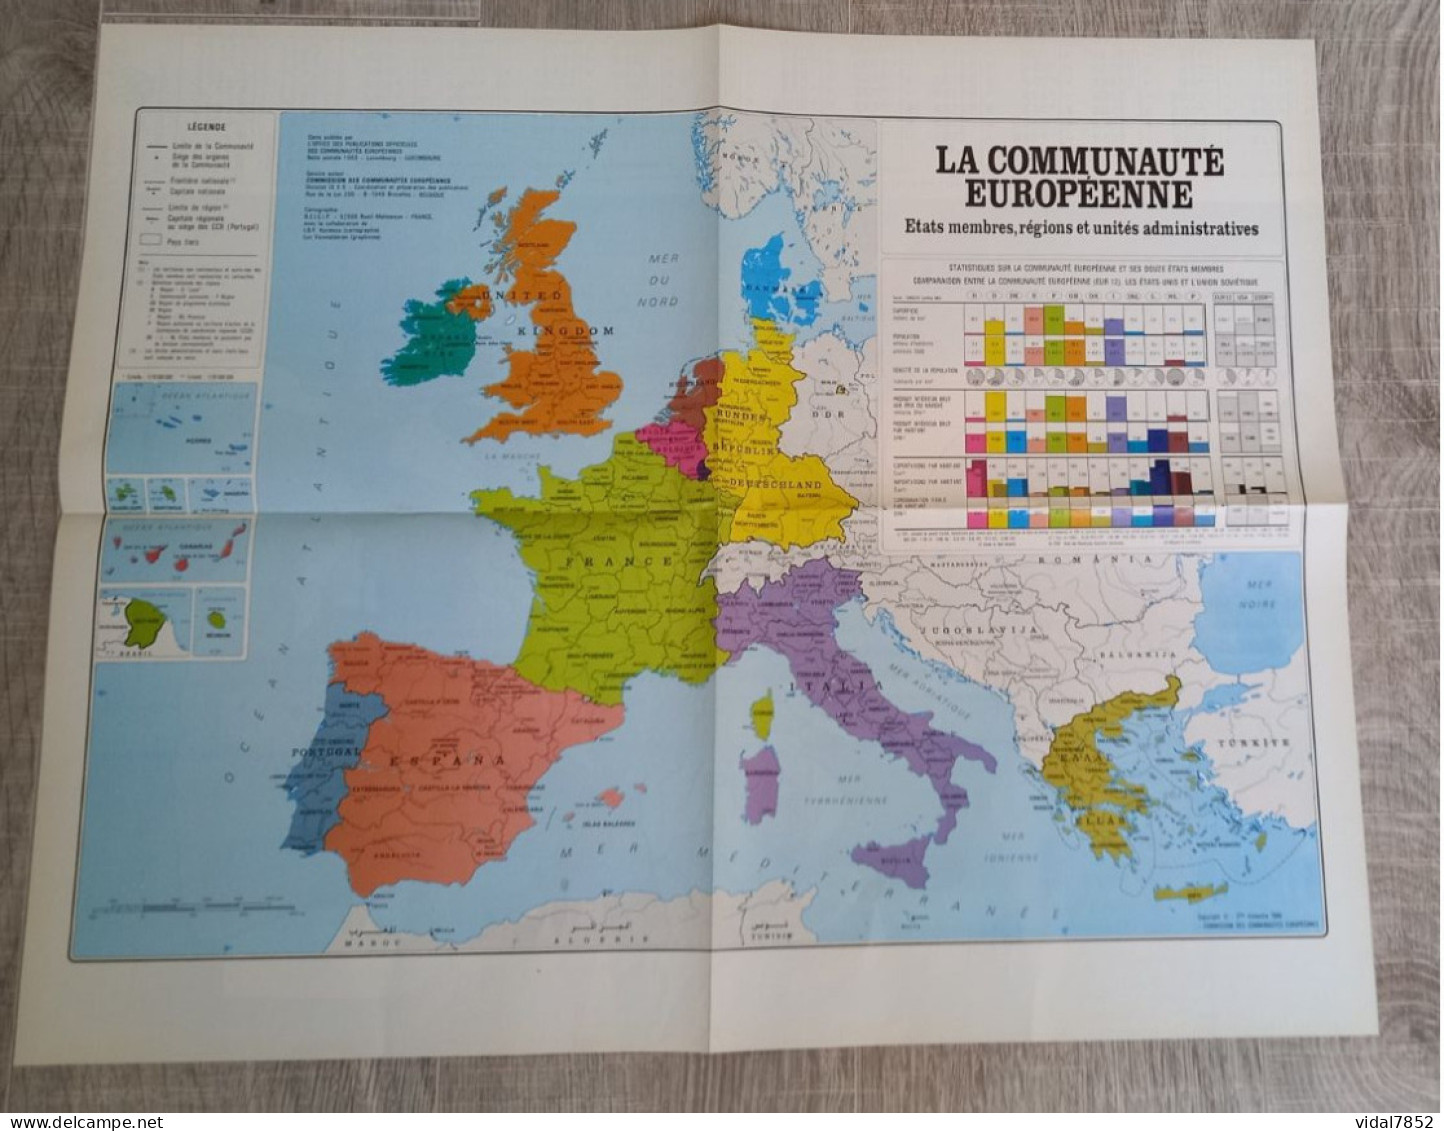 Calendrier-Almanach Des P.T.T 1991-Poster Intérieur Communauté Européenne--Tom Jerry Département AIN-01-Référence 426 - Grossformat : 1991-00